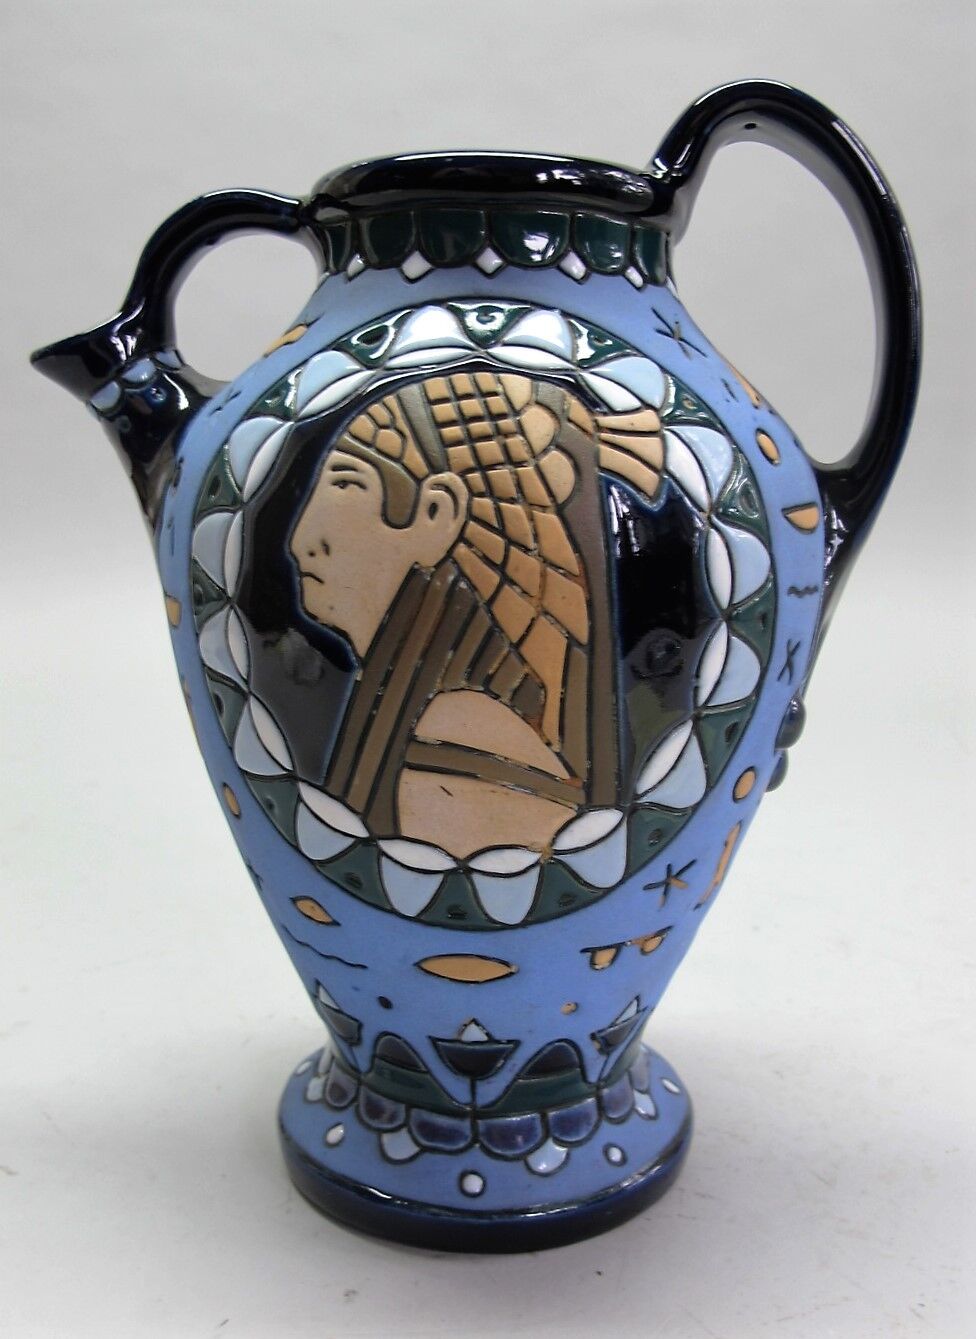 Rare ART NOUVEAU AMPHORA Art Pottery Pitcher   c. 1920